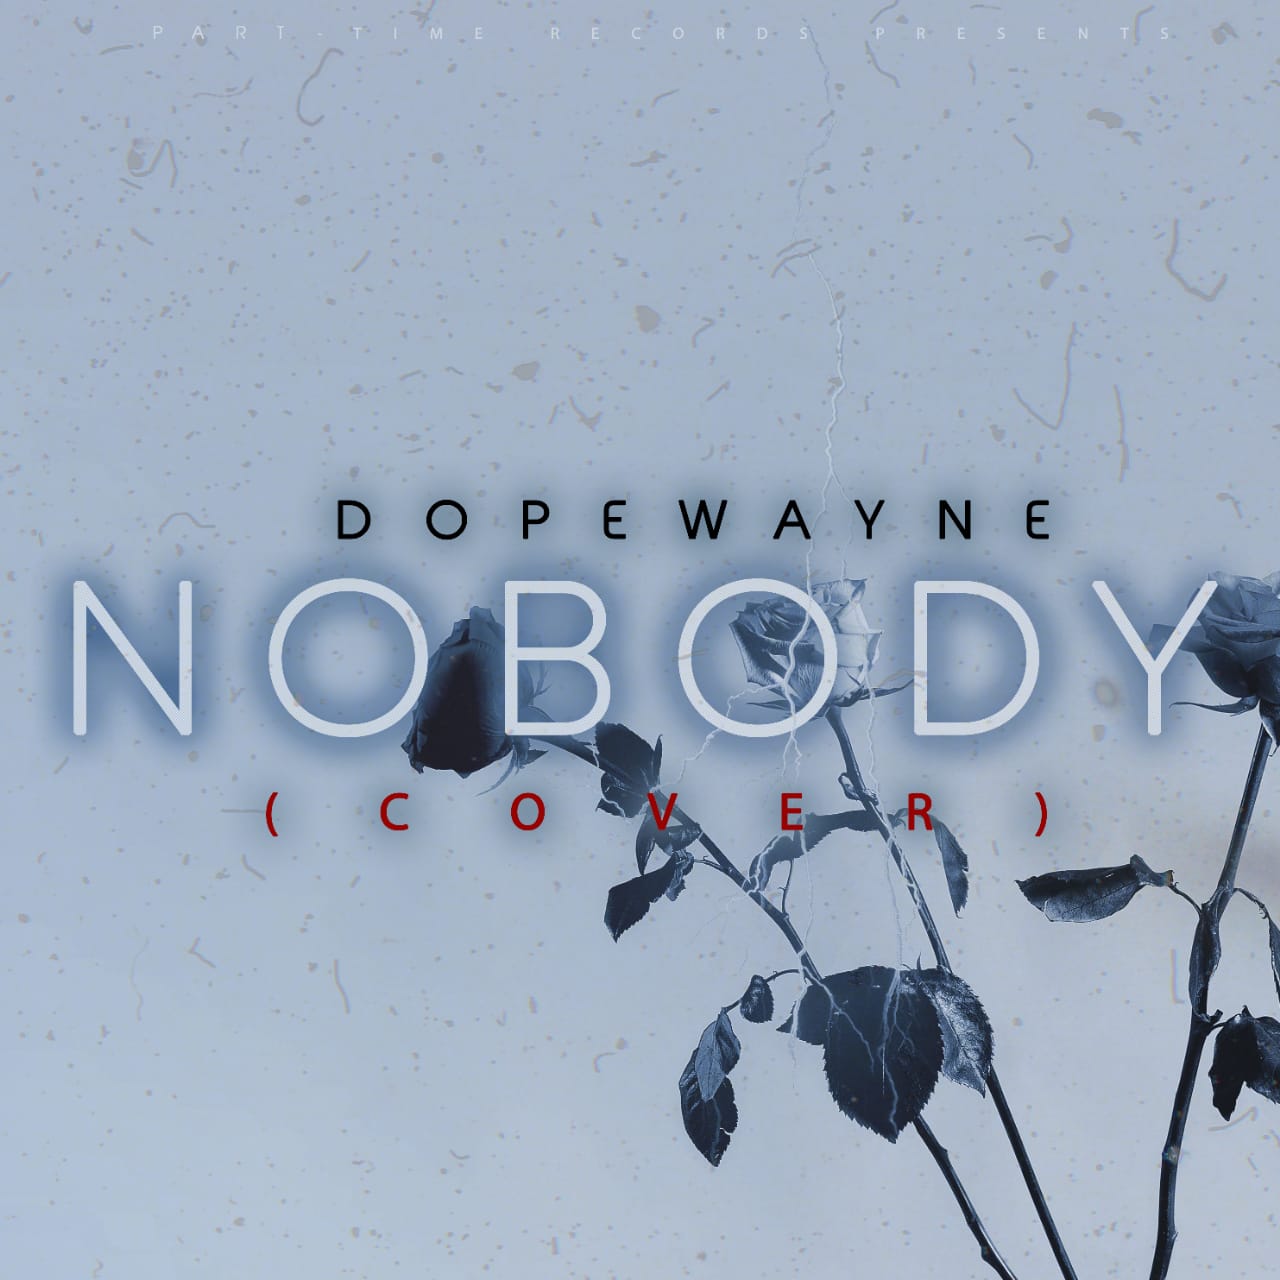 No body cover - Dopewayne